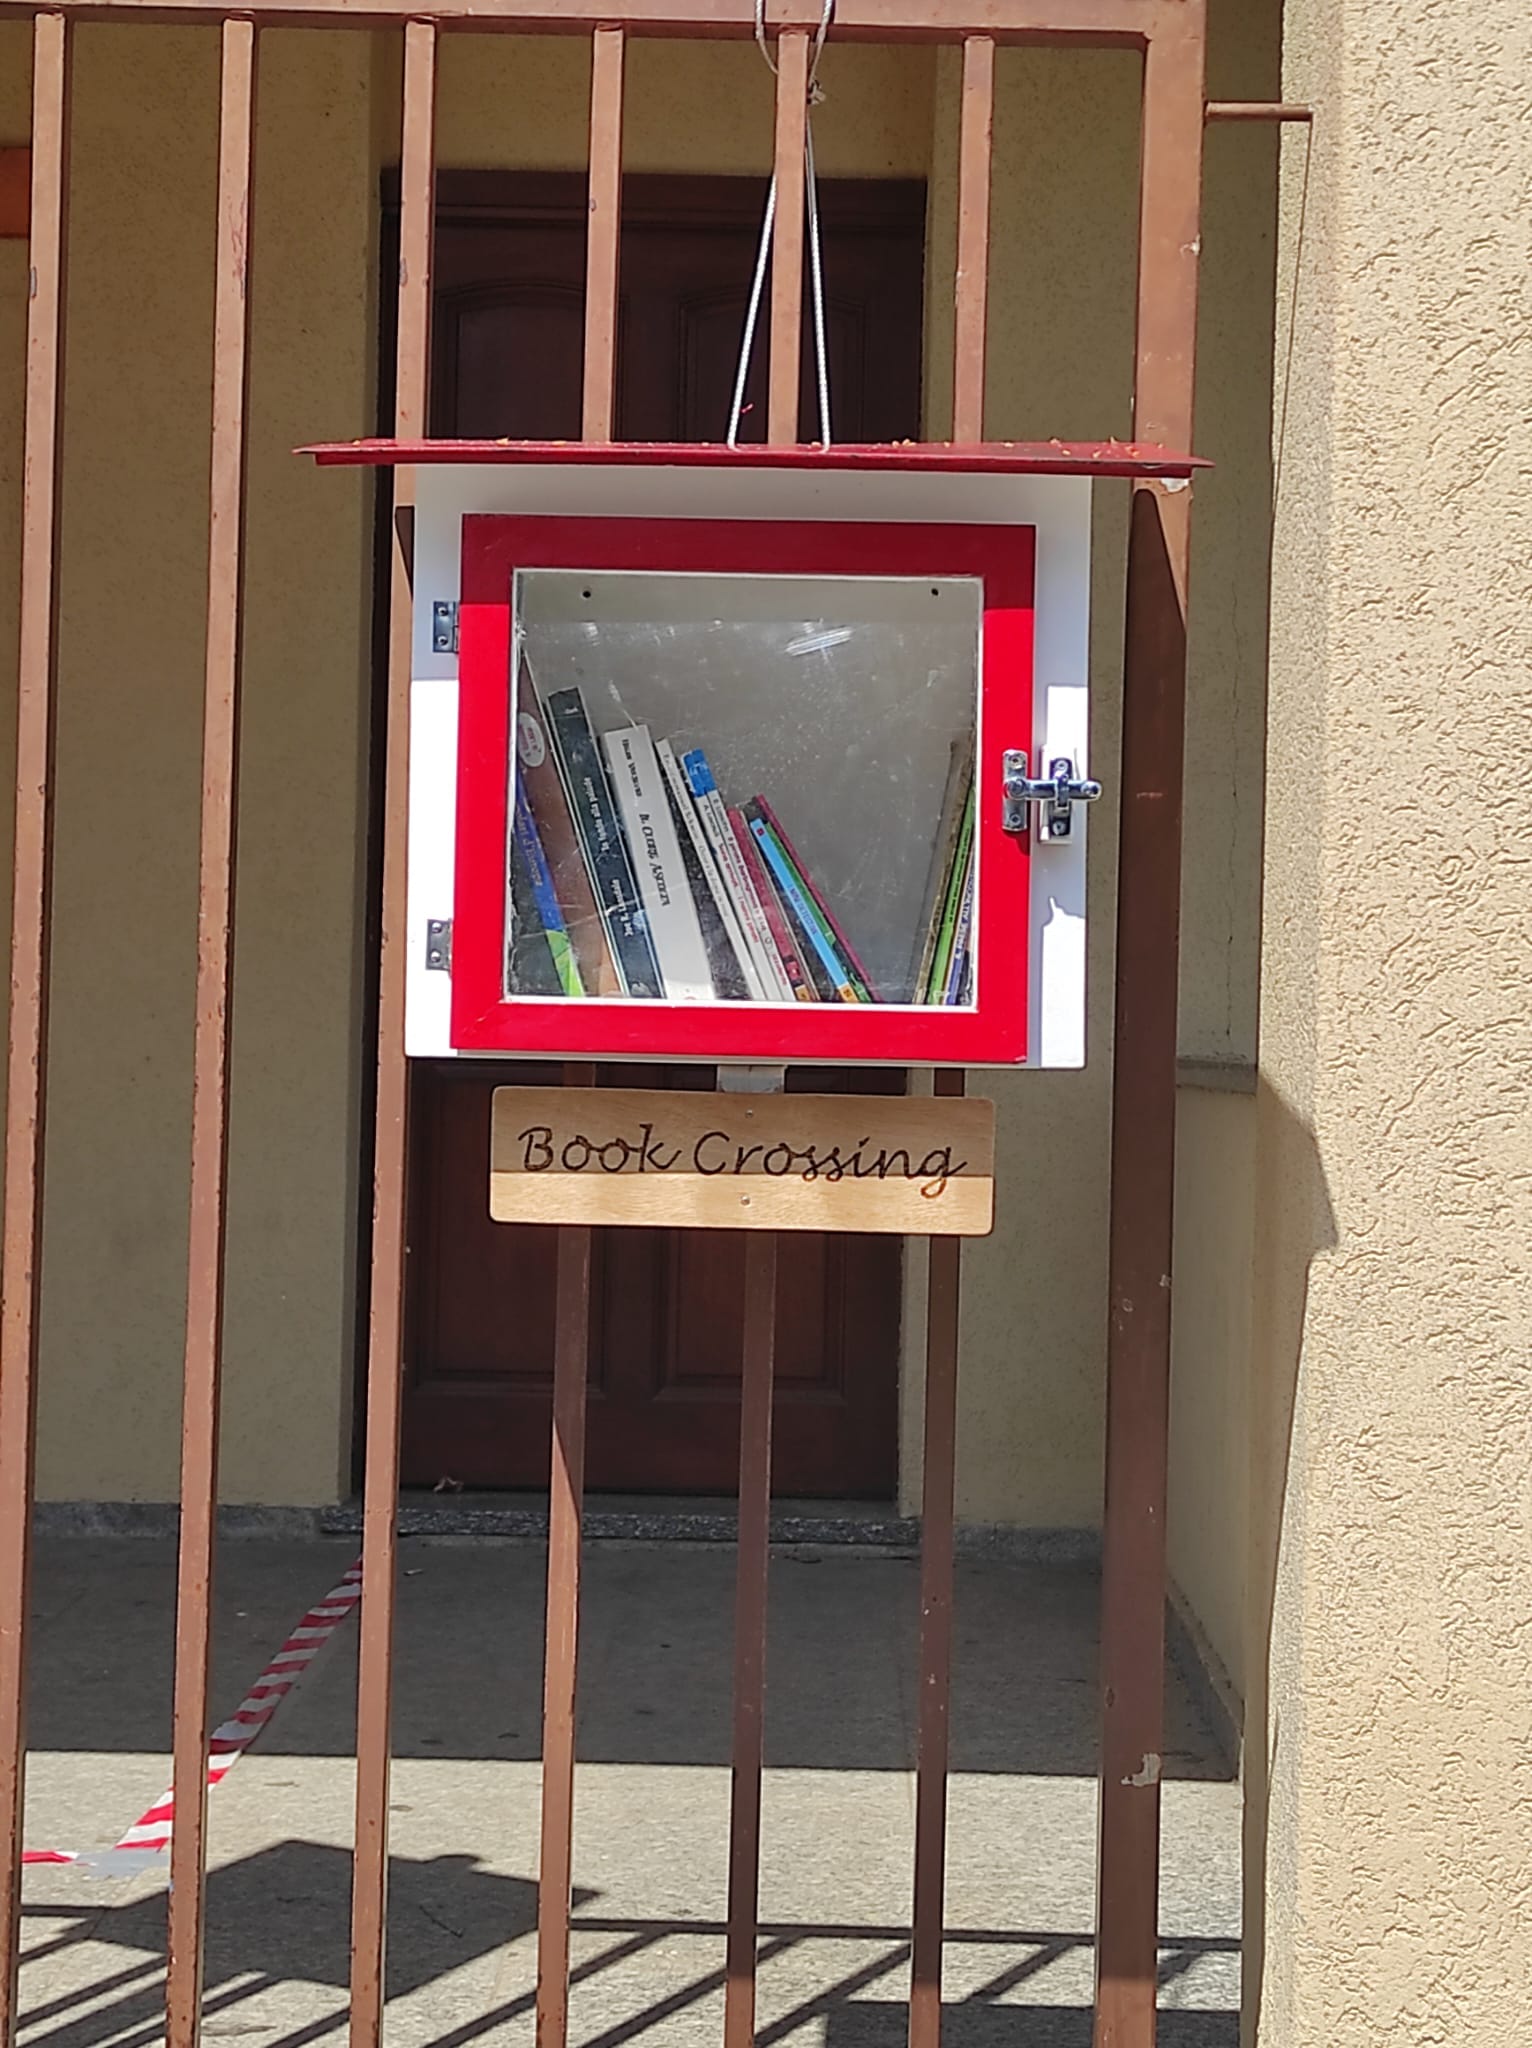 Book crossing: casette dei libri a Rovello Porro